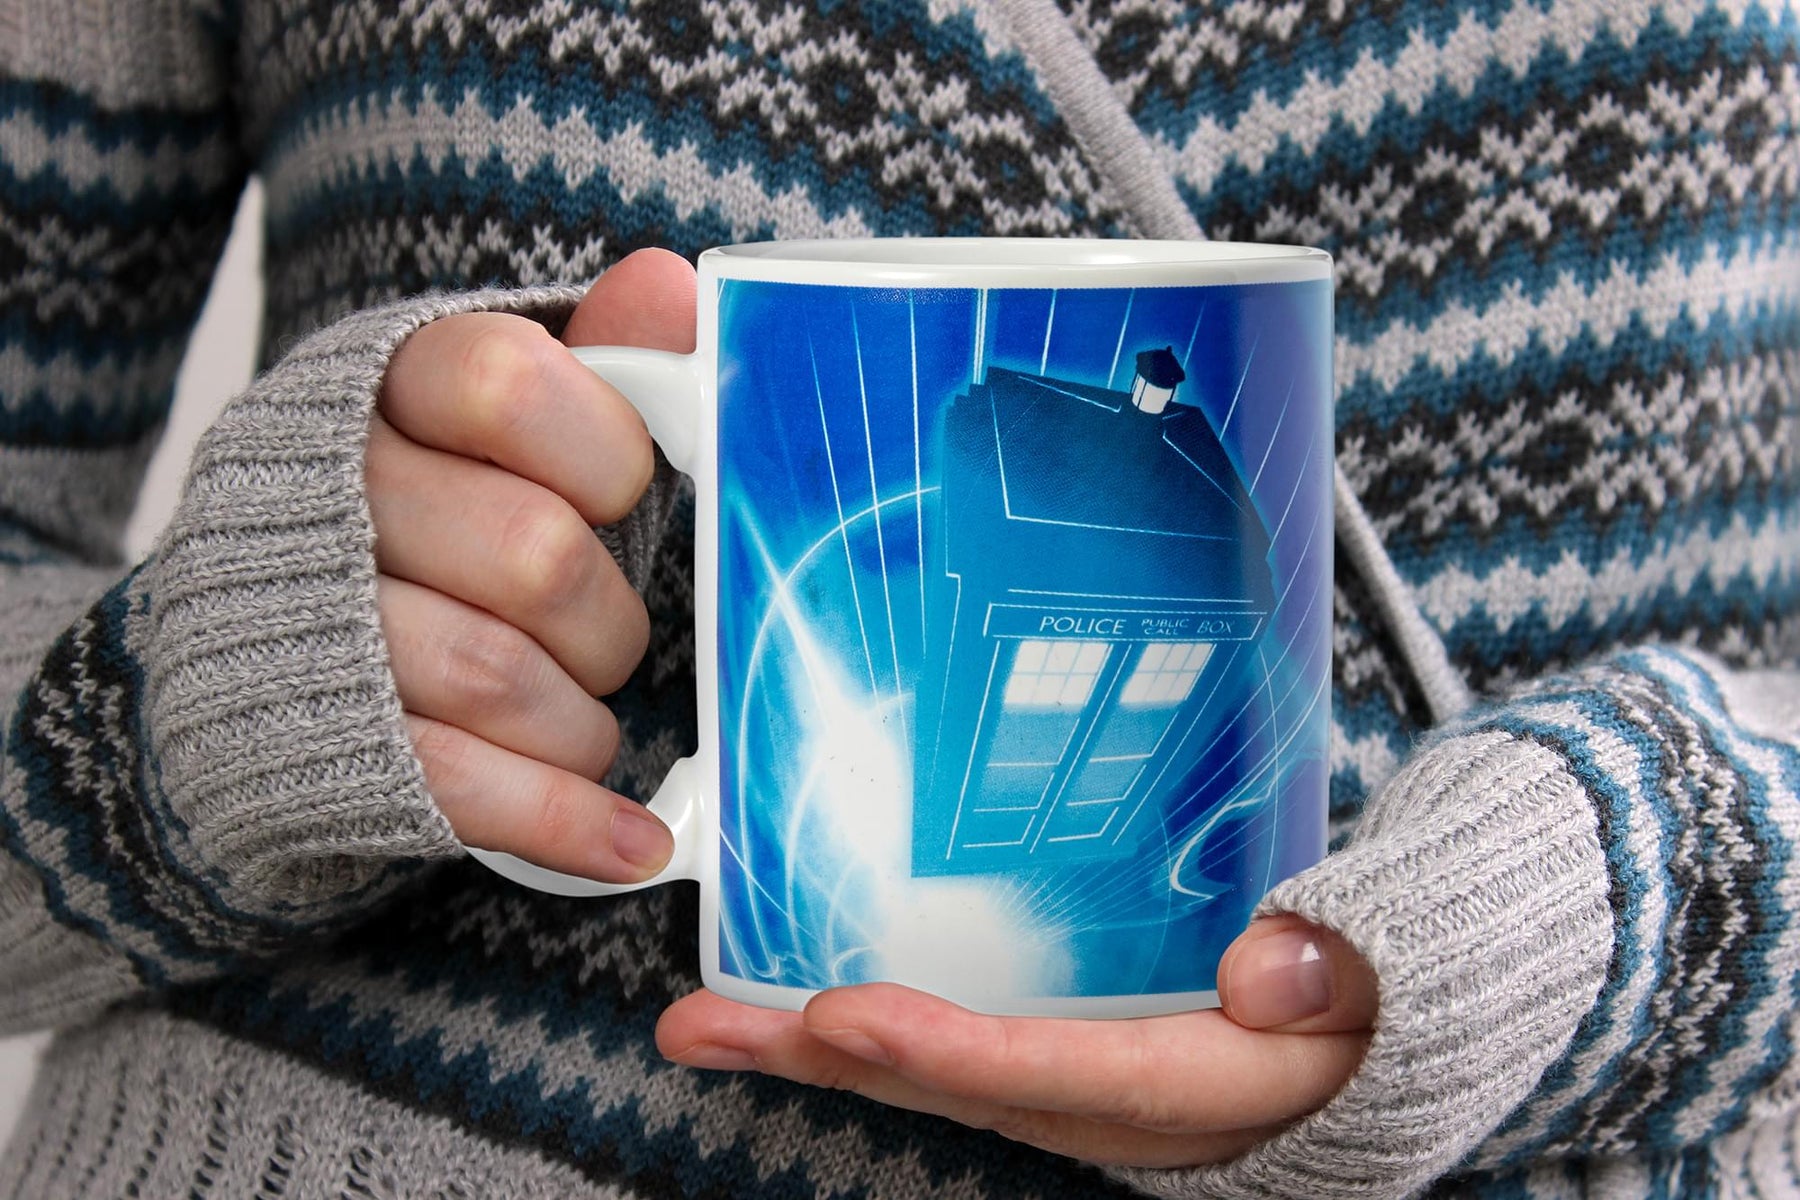 Doctor Who TARDIS 11-Oz Ceramic Coffee Mug